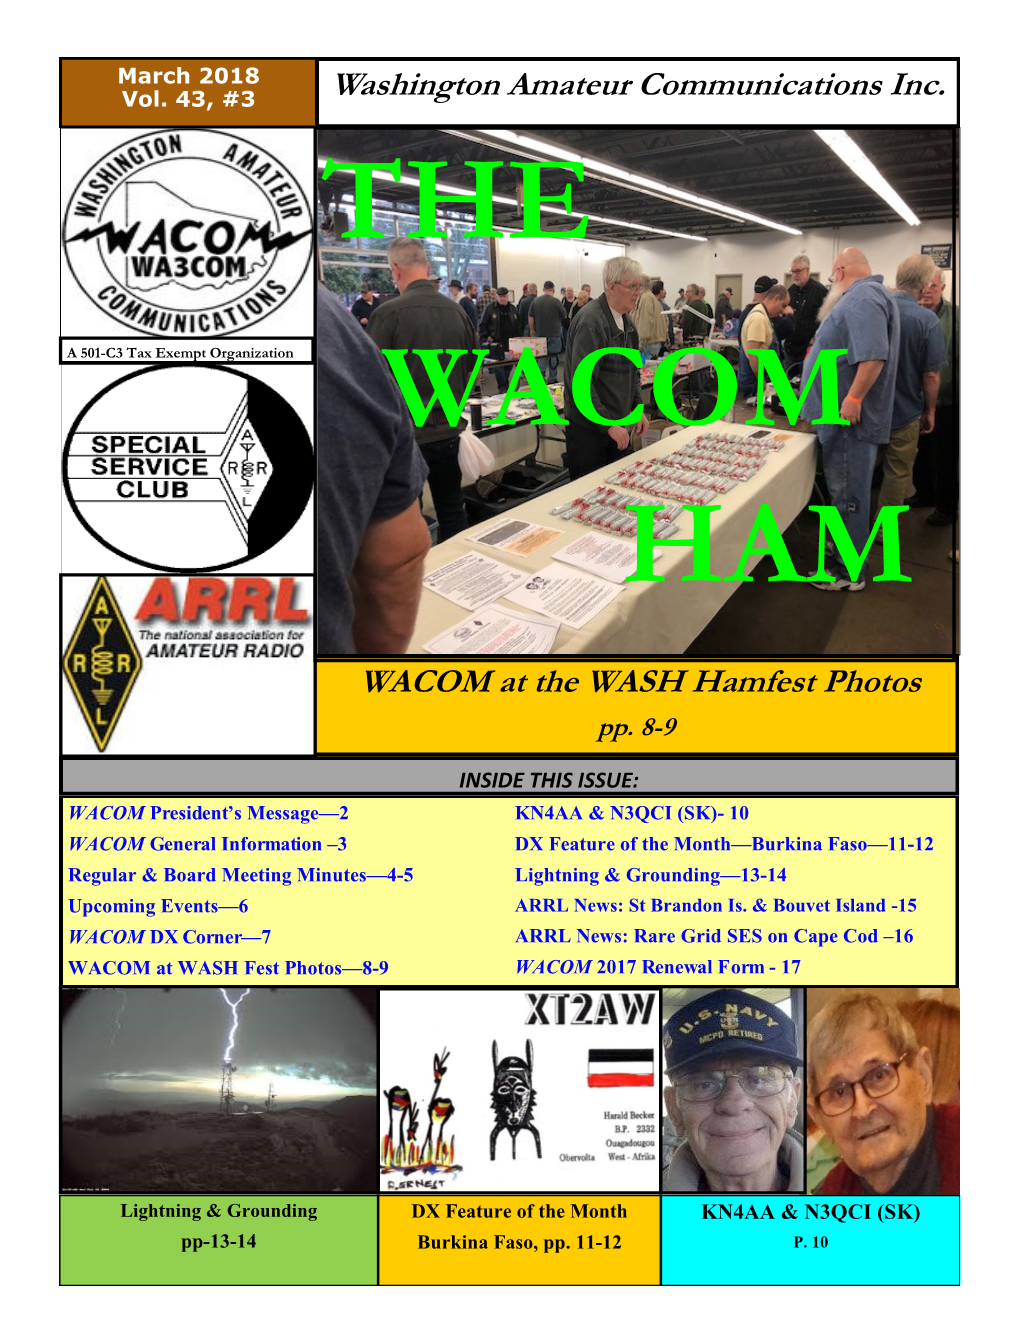 Washington Amateur Communications Inc. WACOM at the WASH Hamfest